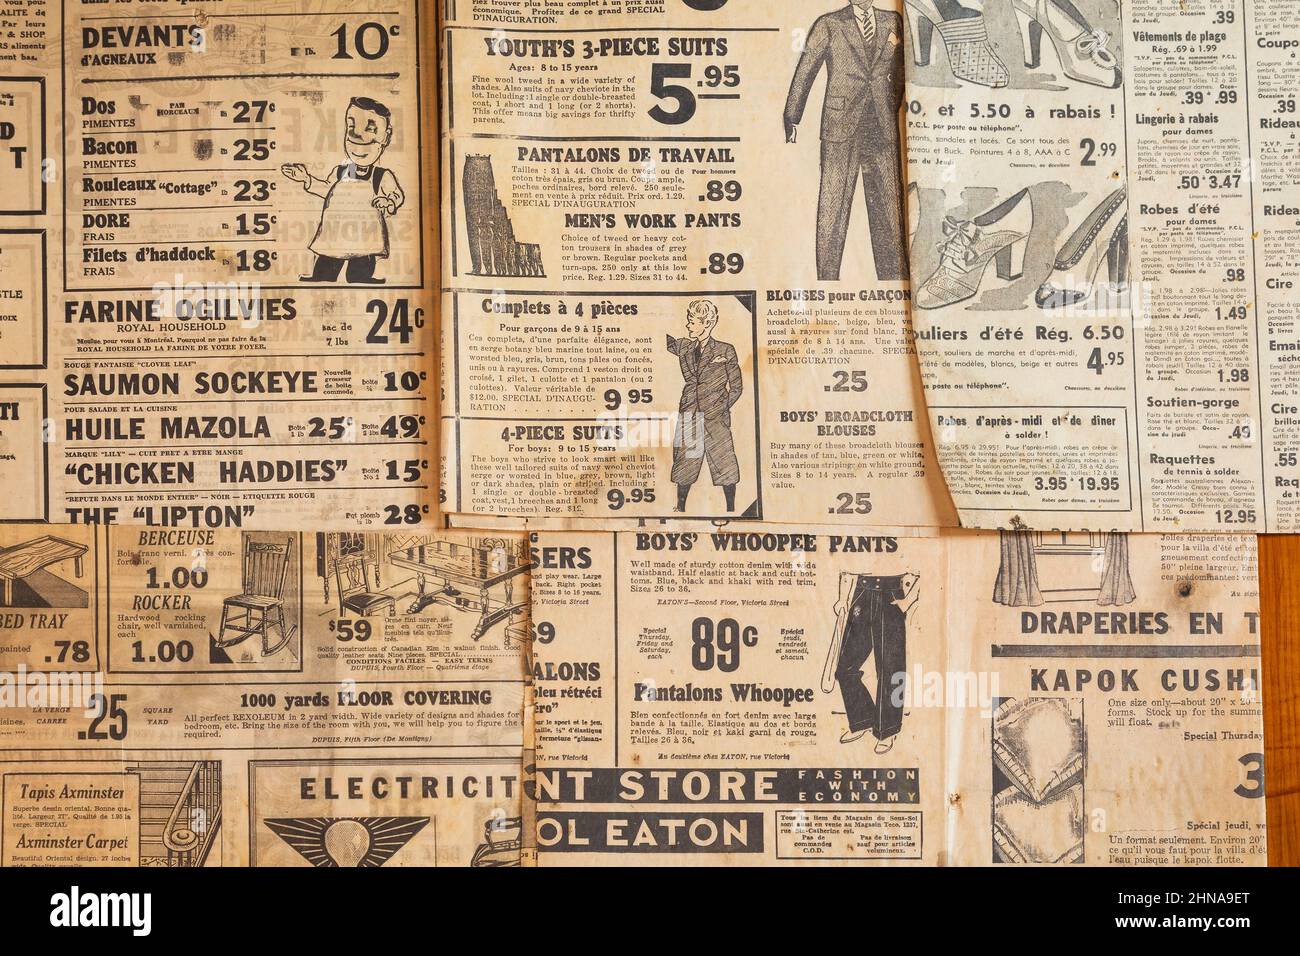 Annunci di abbigliamento e prodotti bilingue in francese e inglese stampati su vecchi giornali del 1930s, 40s, 50s. Foto Stock